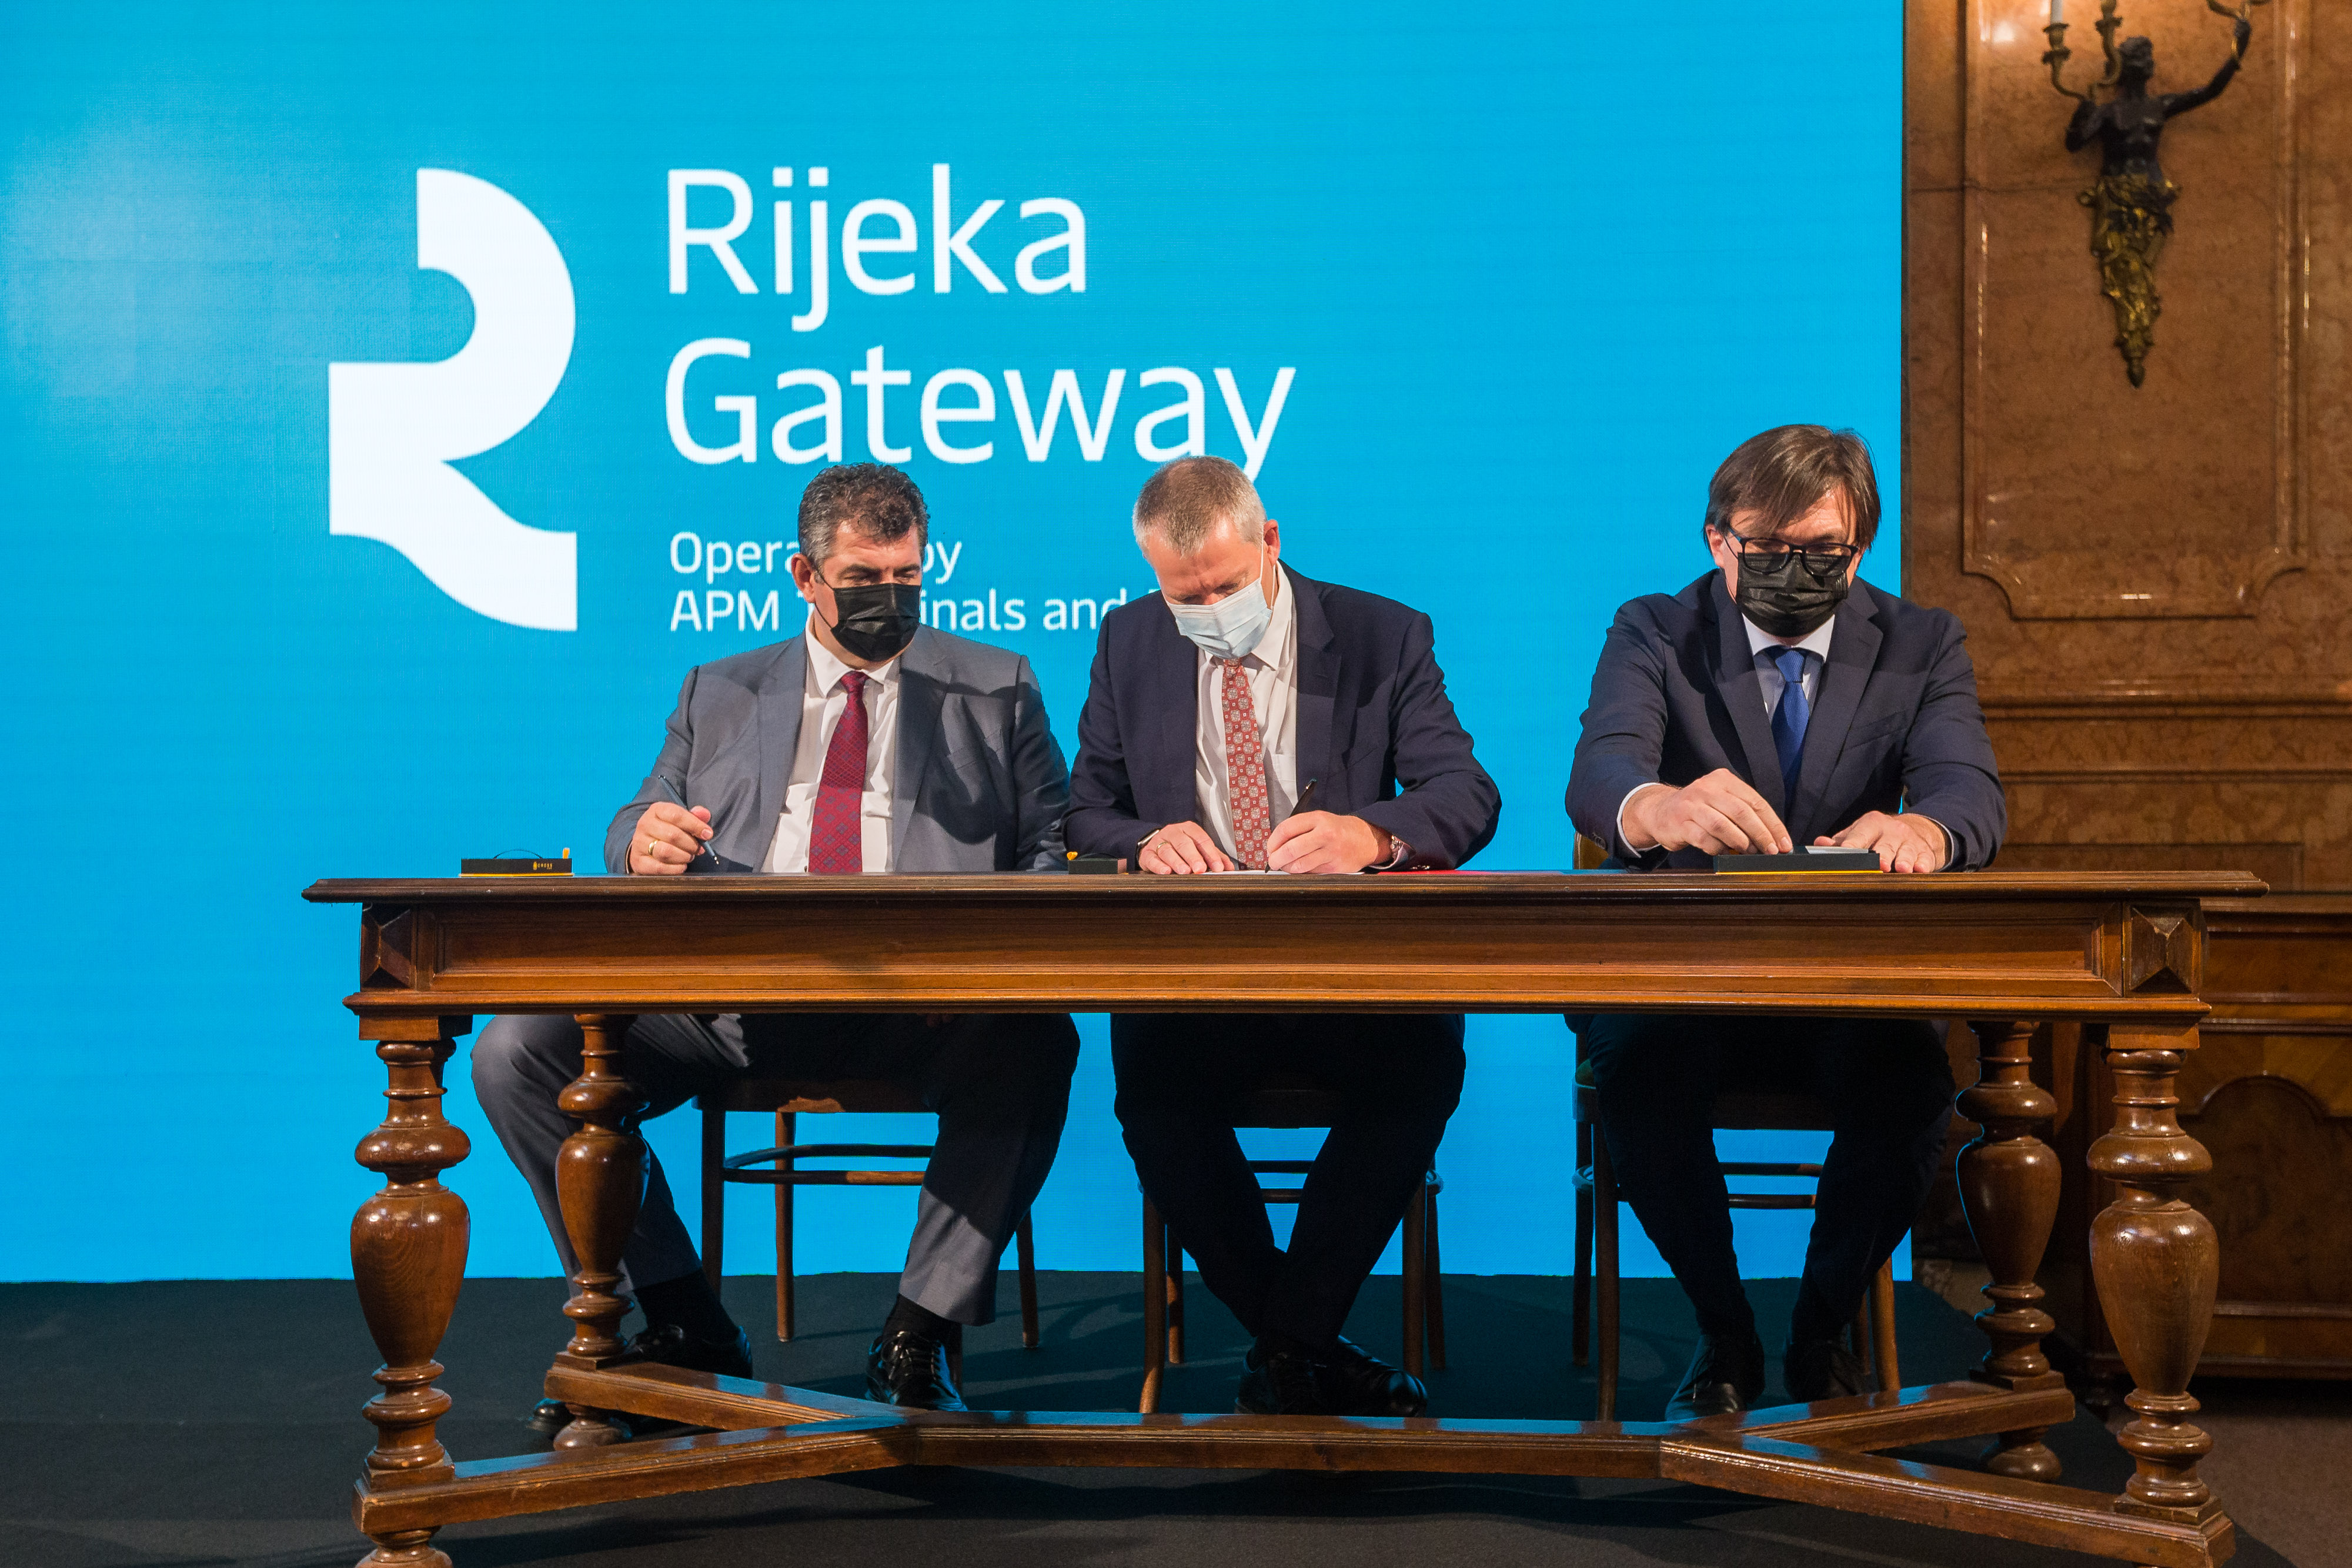 DAN ZA POVIJEST: Potpisan ugovor o koncesiji za razvoj i gospodarsko korištenje Zagreb Deep Sea kontejnerskim terminalom u luci Rijeka